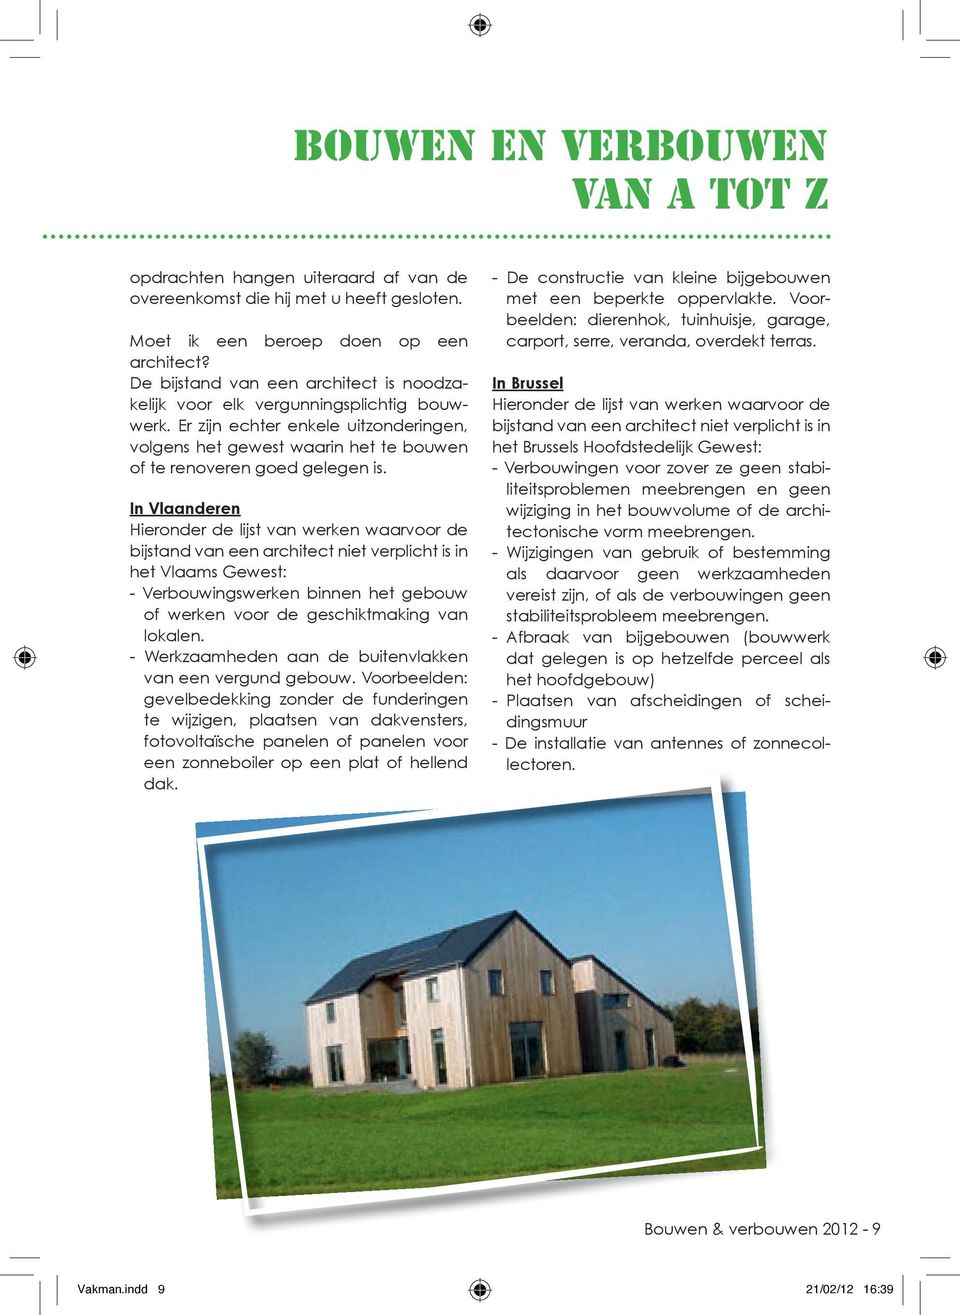 In Vlaanderen Hieronder de lijst van werken waarvoor de bijstand van een architect niet verplicht is in het Vlaams Gewest: - Verbouwingswerken binnen het gebouw of werken voor de geschiktmaking van